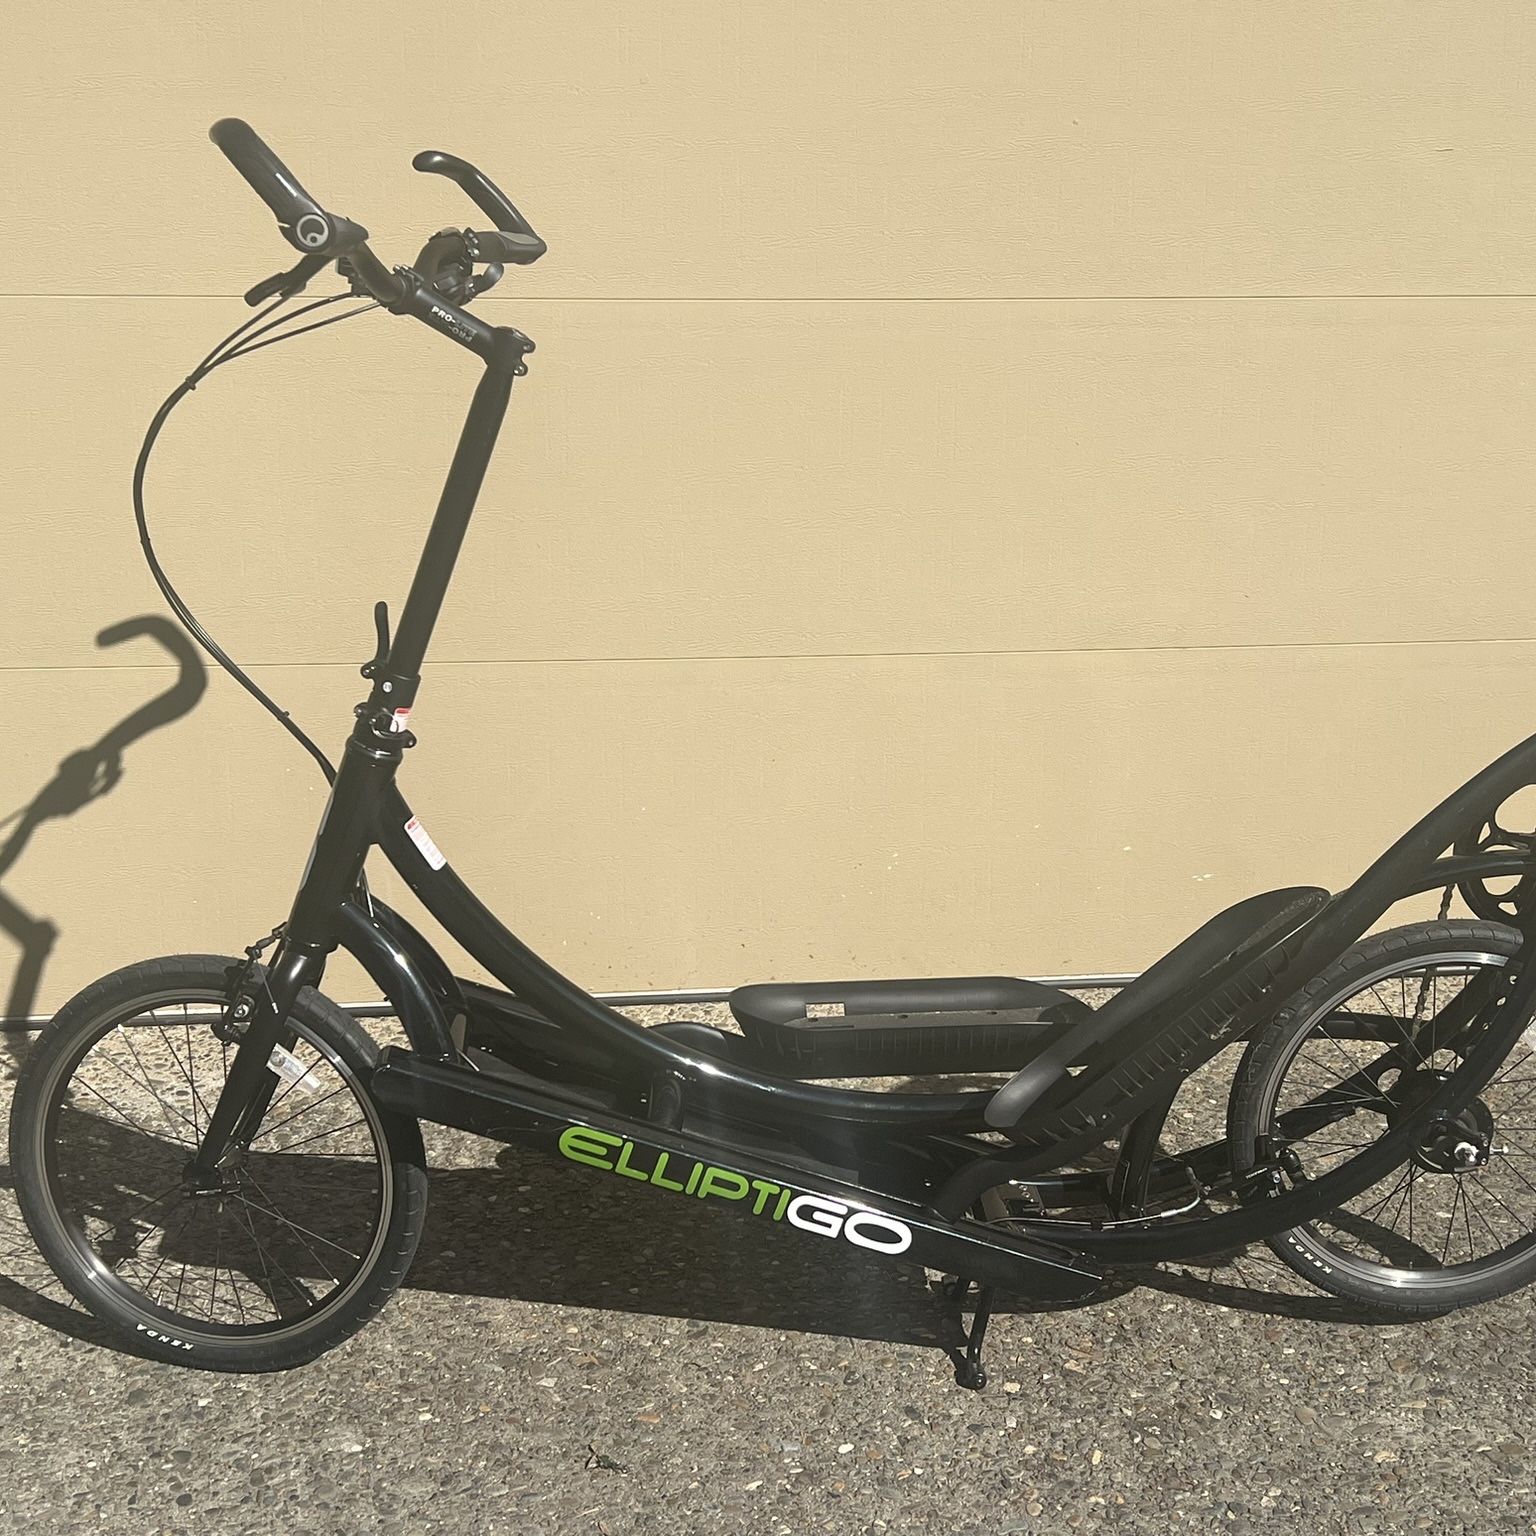 Elliptigo - Excellent Used Condition Elliptical Bike